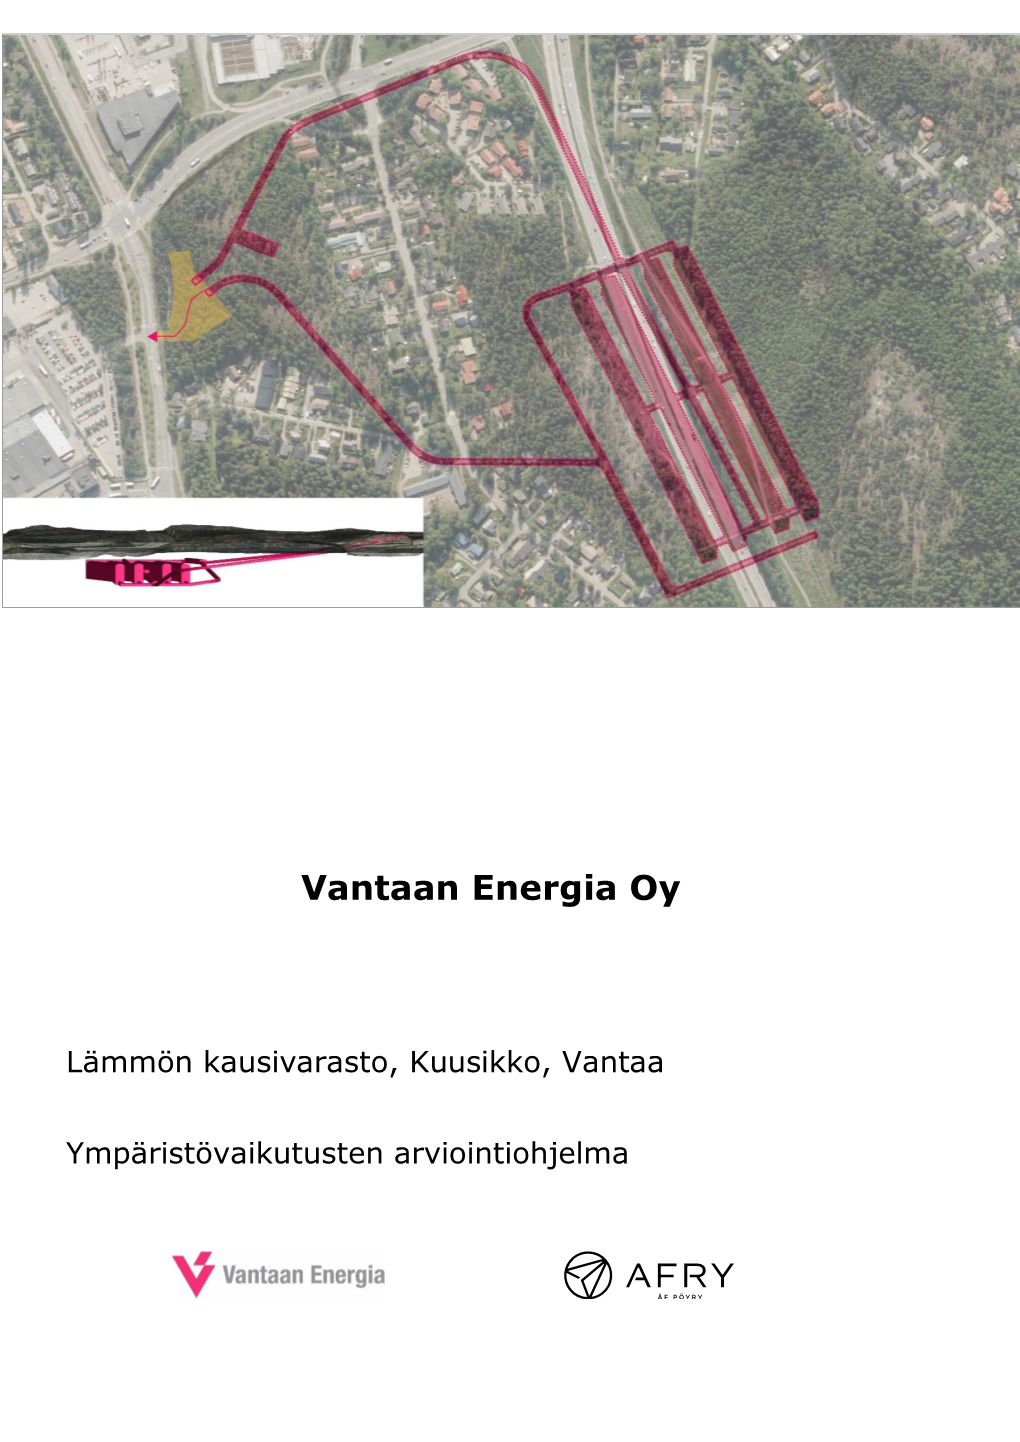 Vantaan Energia Oy